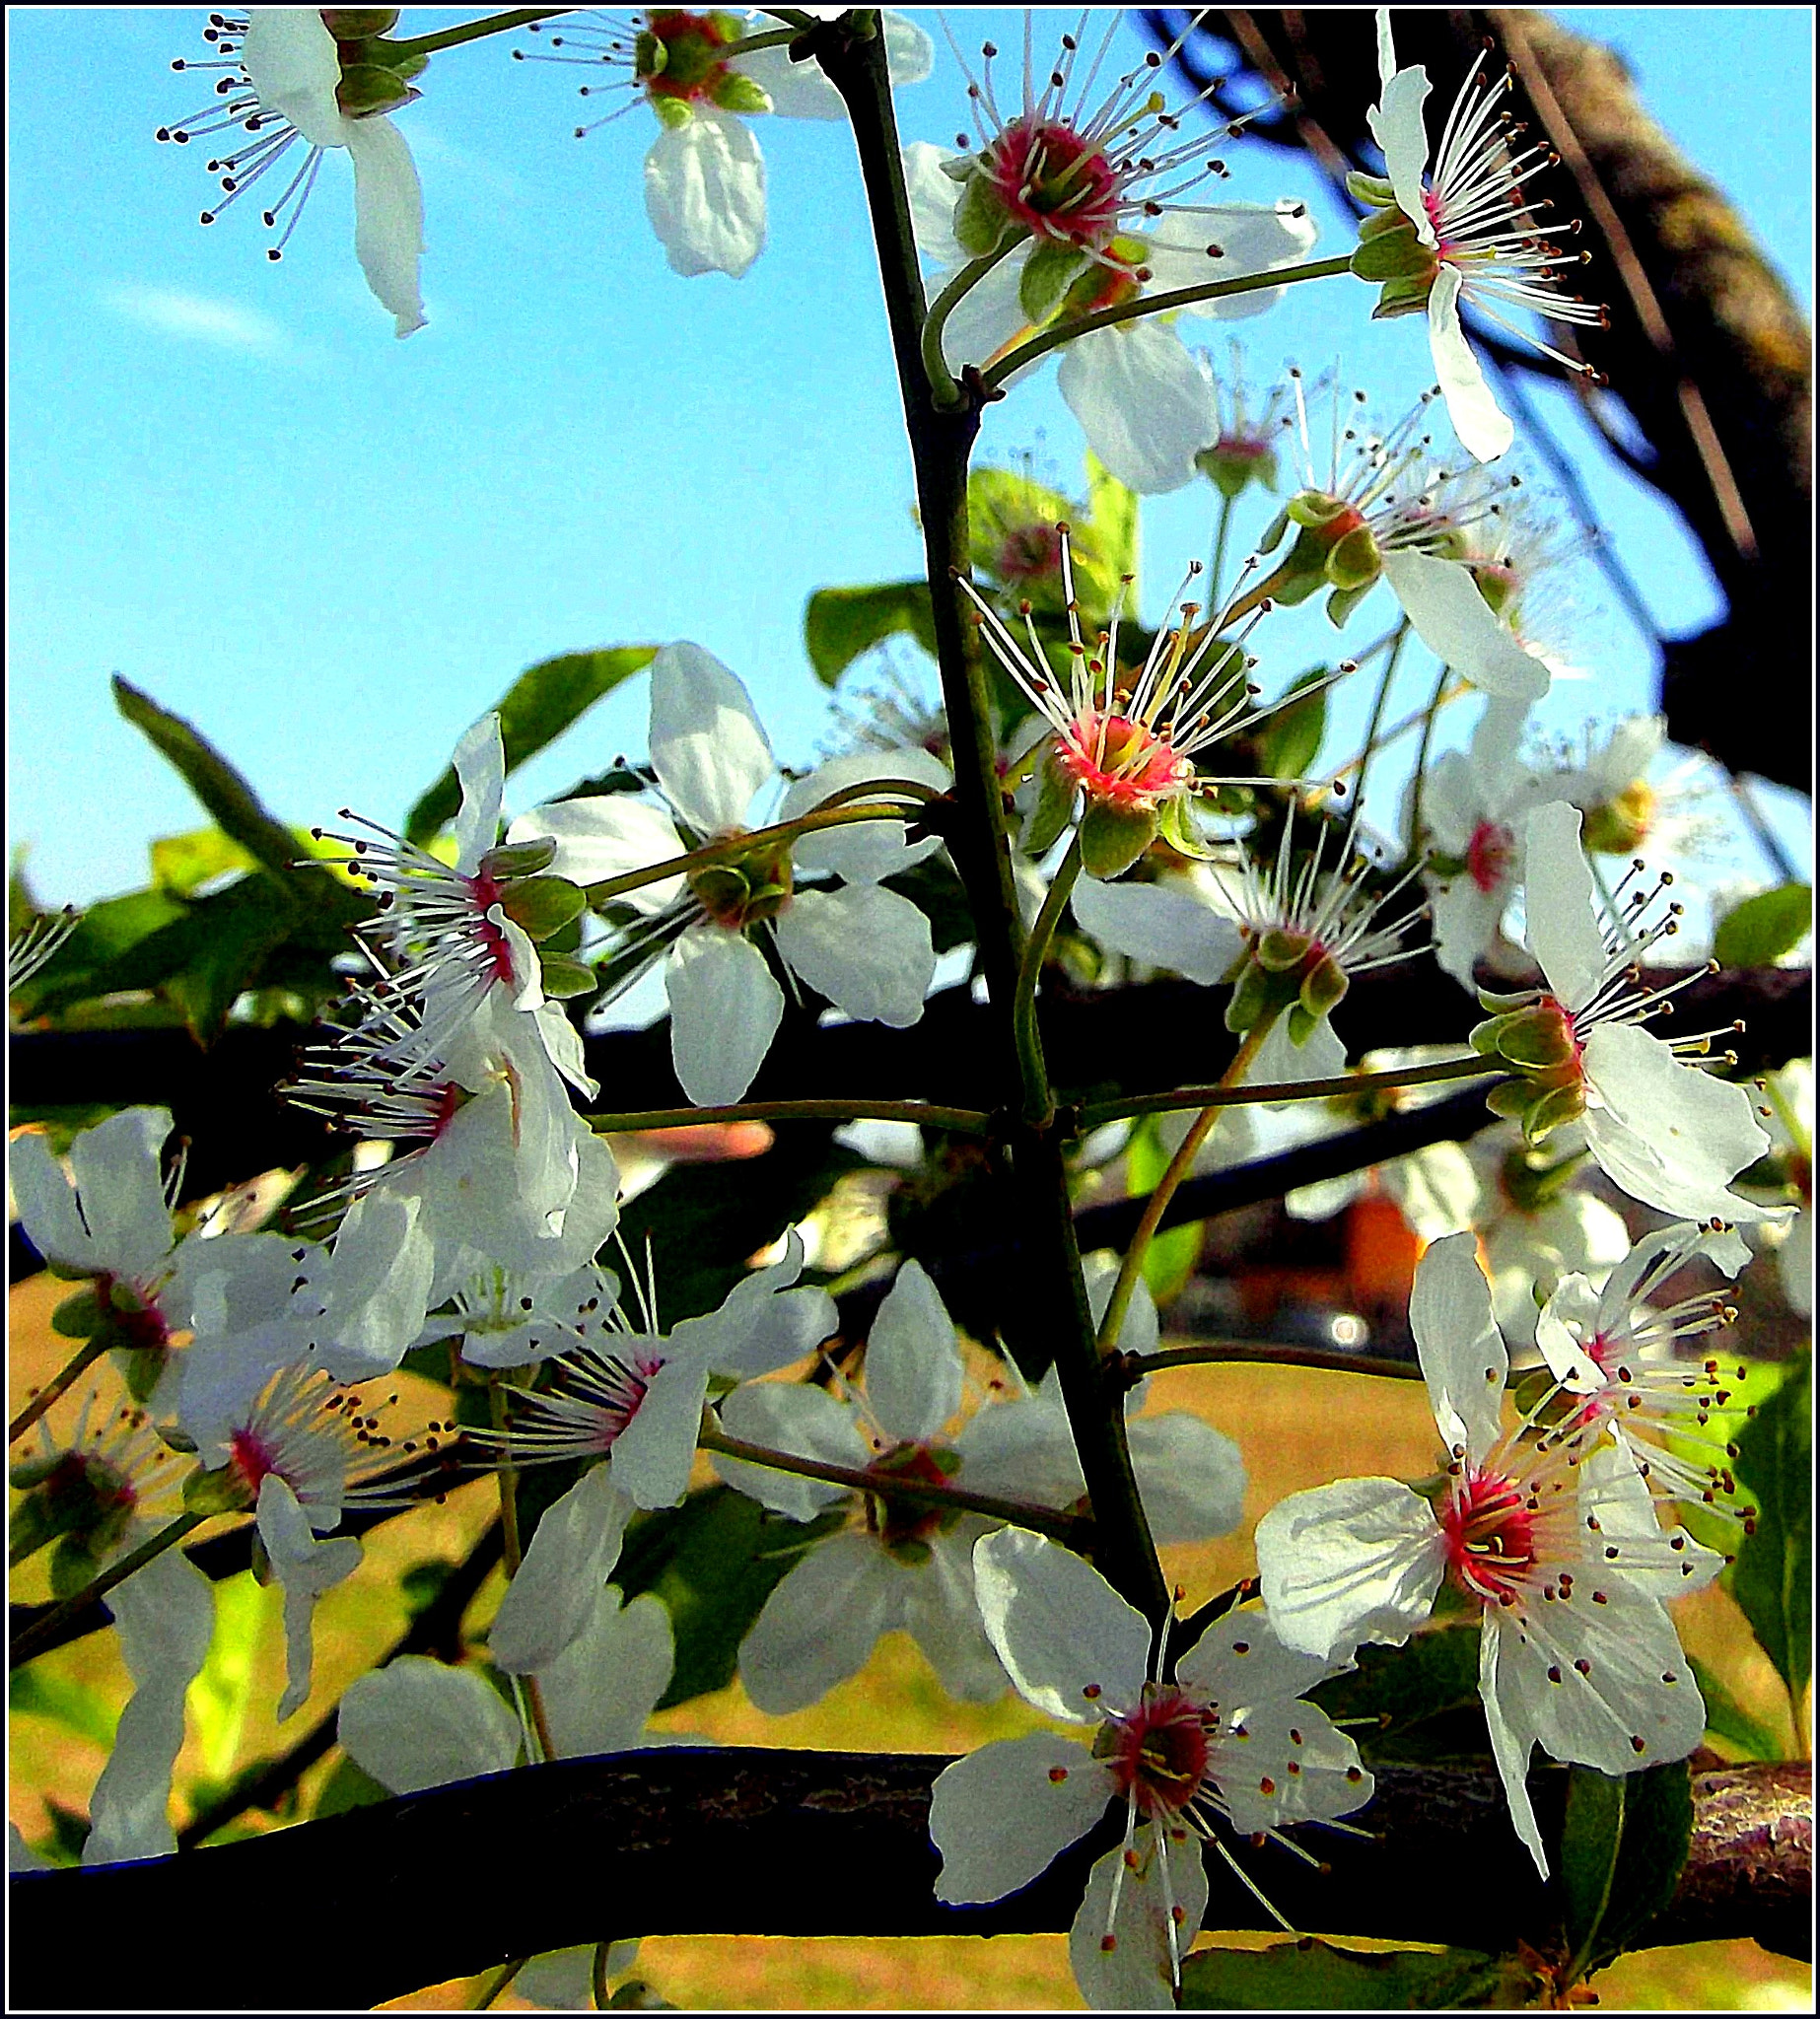 Fujifilm FinePix JX250 sample photo. Meravigliosi fiori di primavera. photography